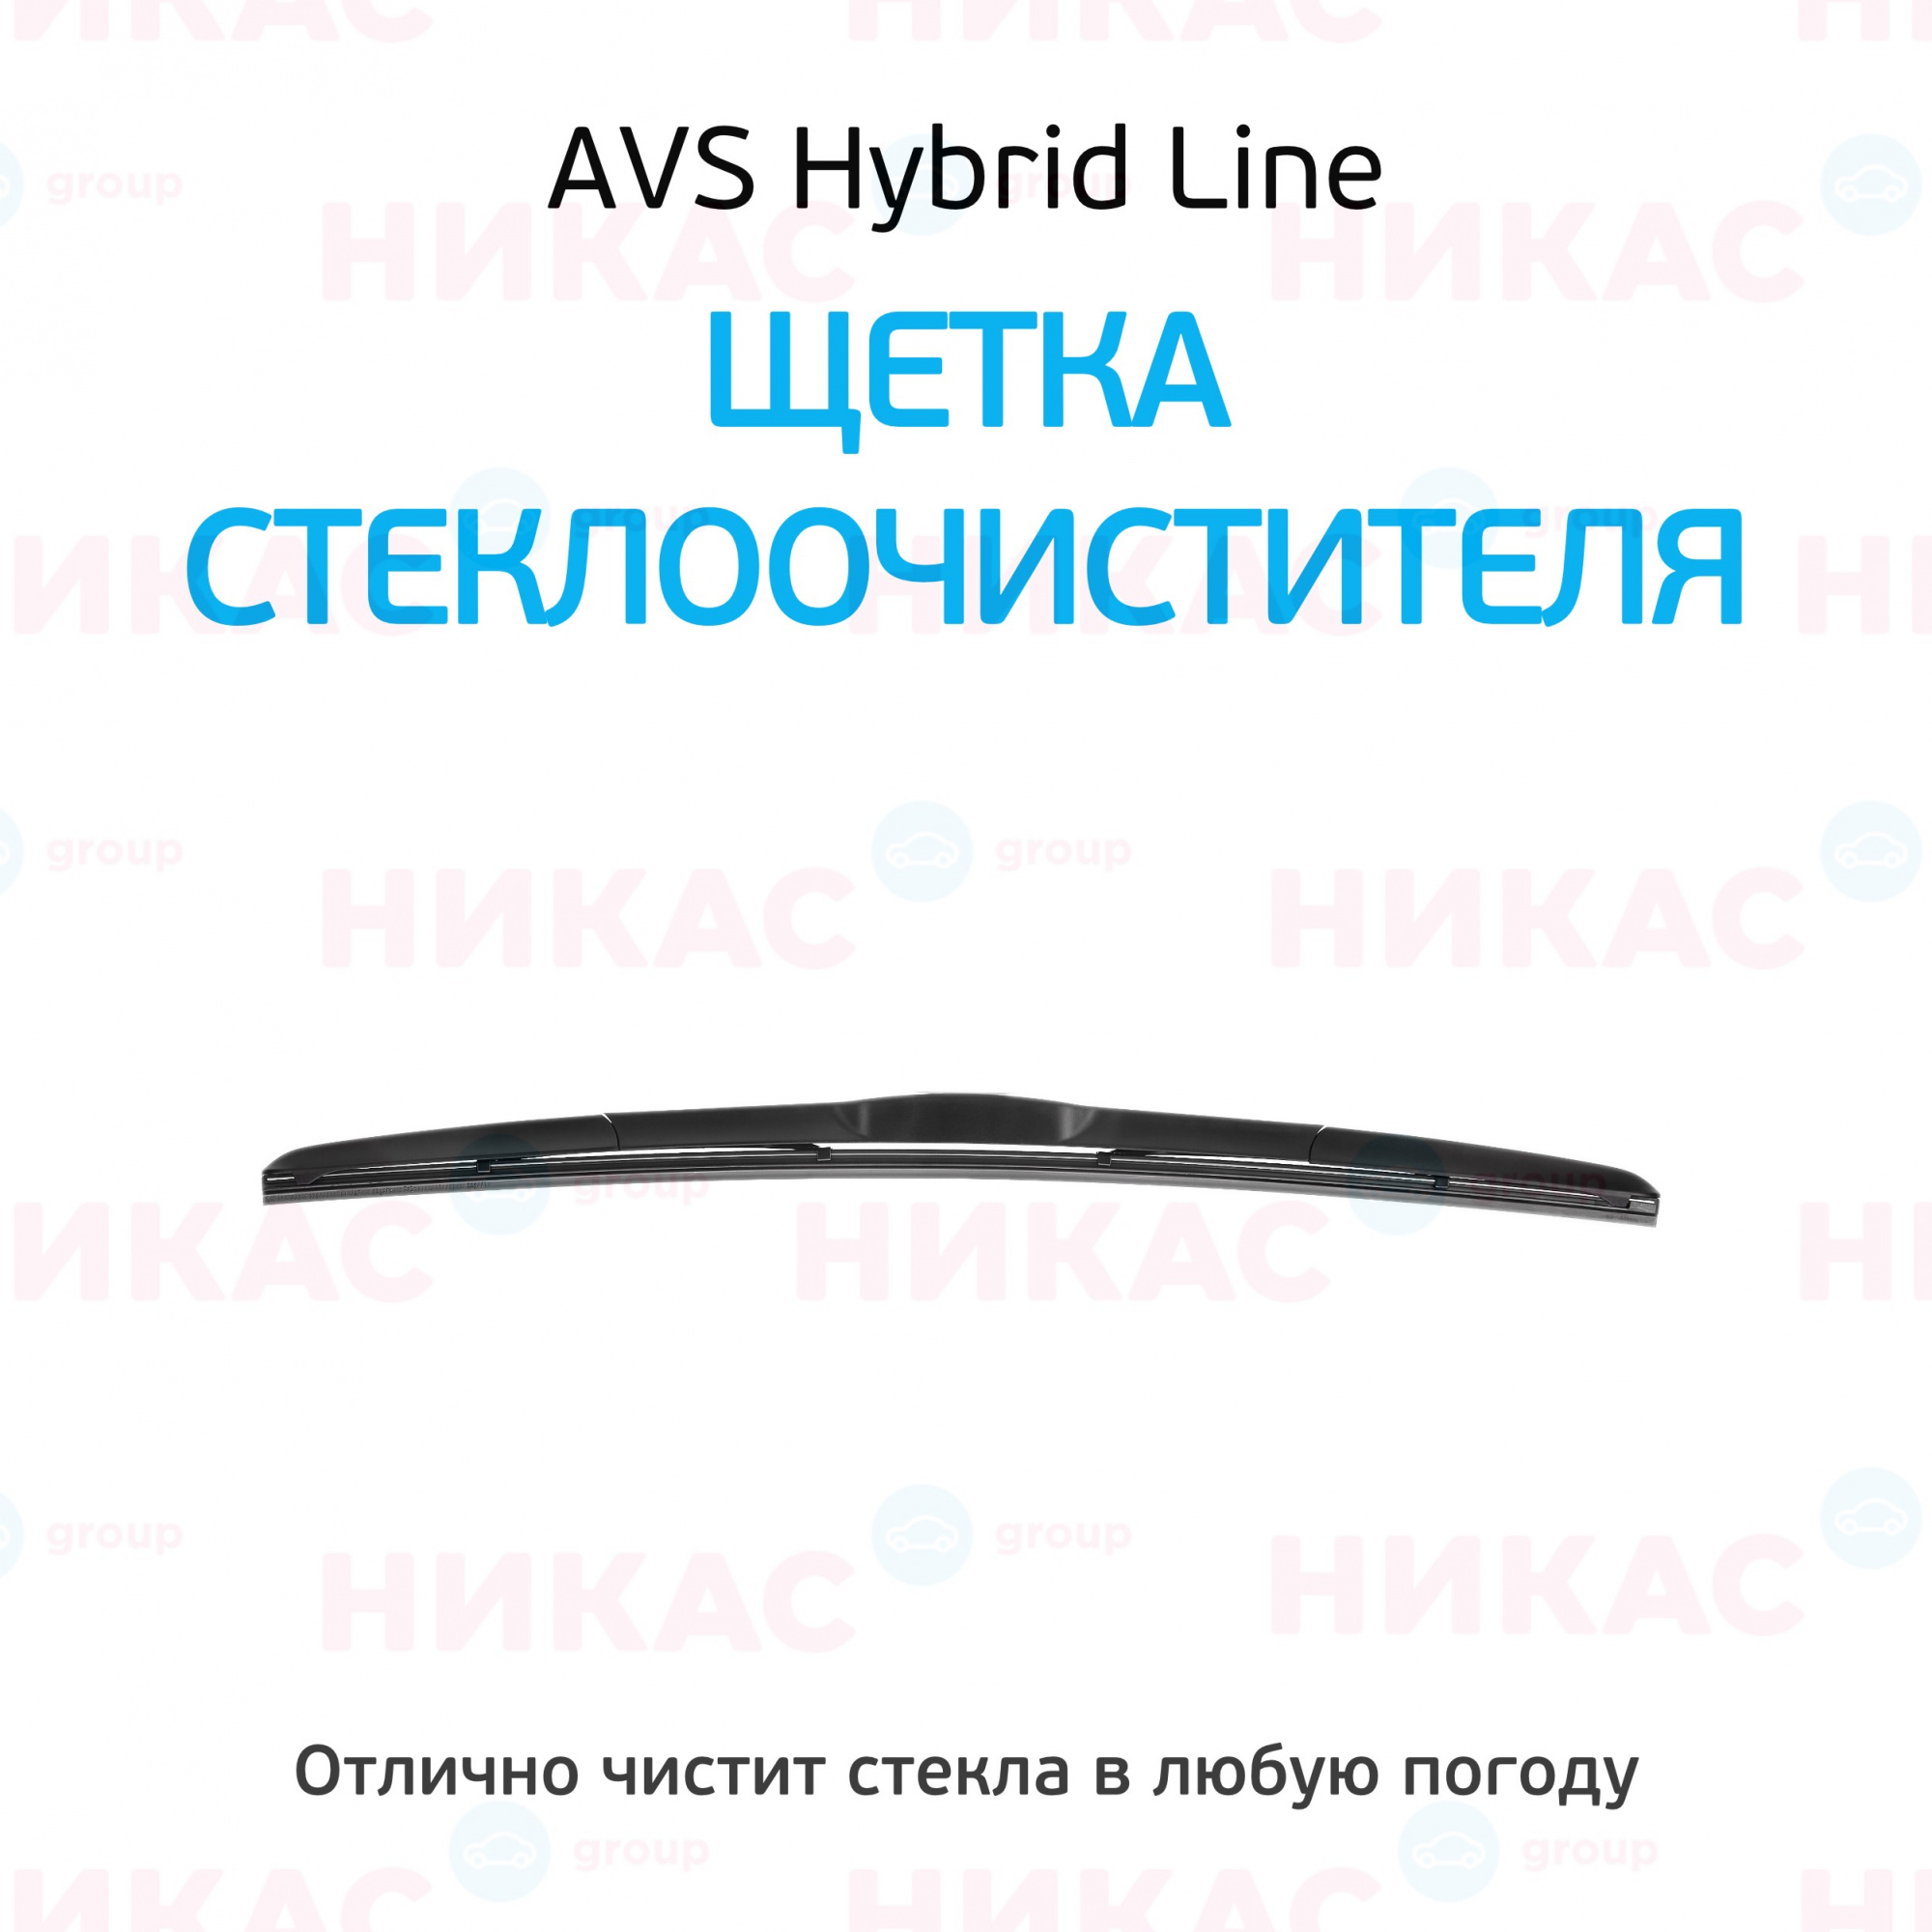 Hybrid line. AVS щётка стеклоочистителя 600 мм гибридная.